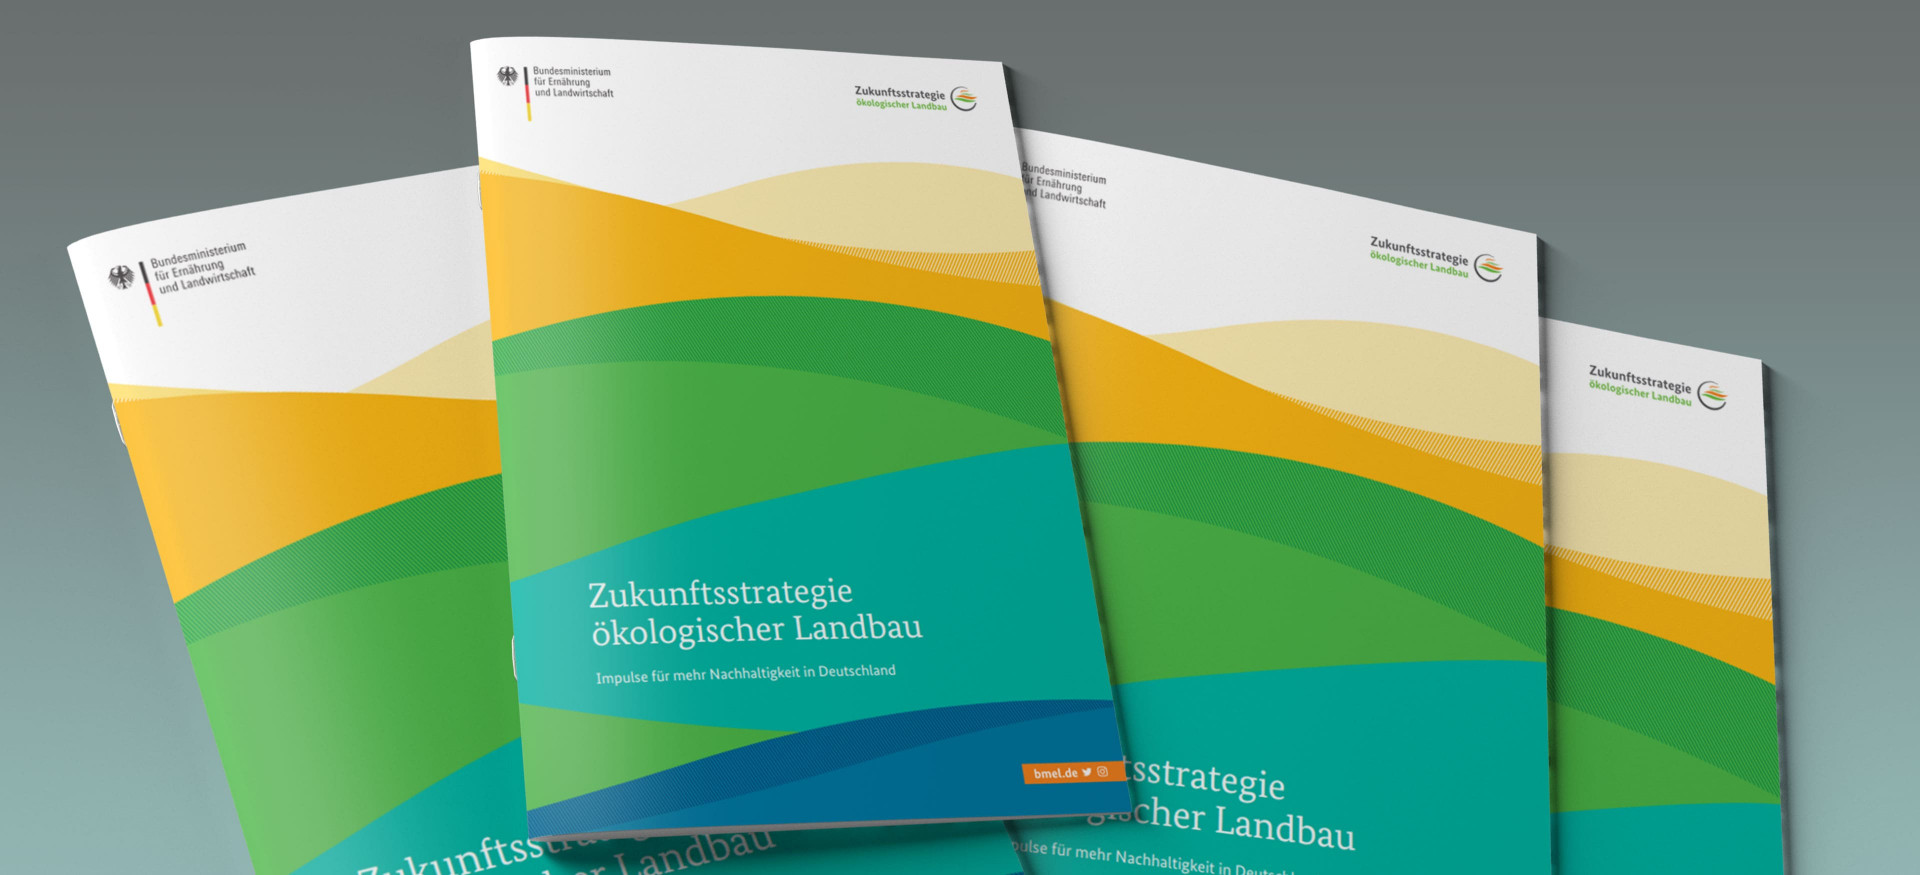 Das Bild zeigt einen Stapel Broschüren mit dem Titel "Zukunftsstrategie ökologischer Landbau".